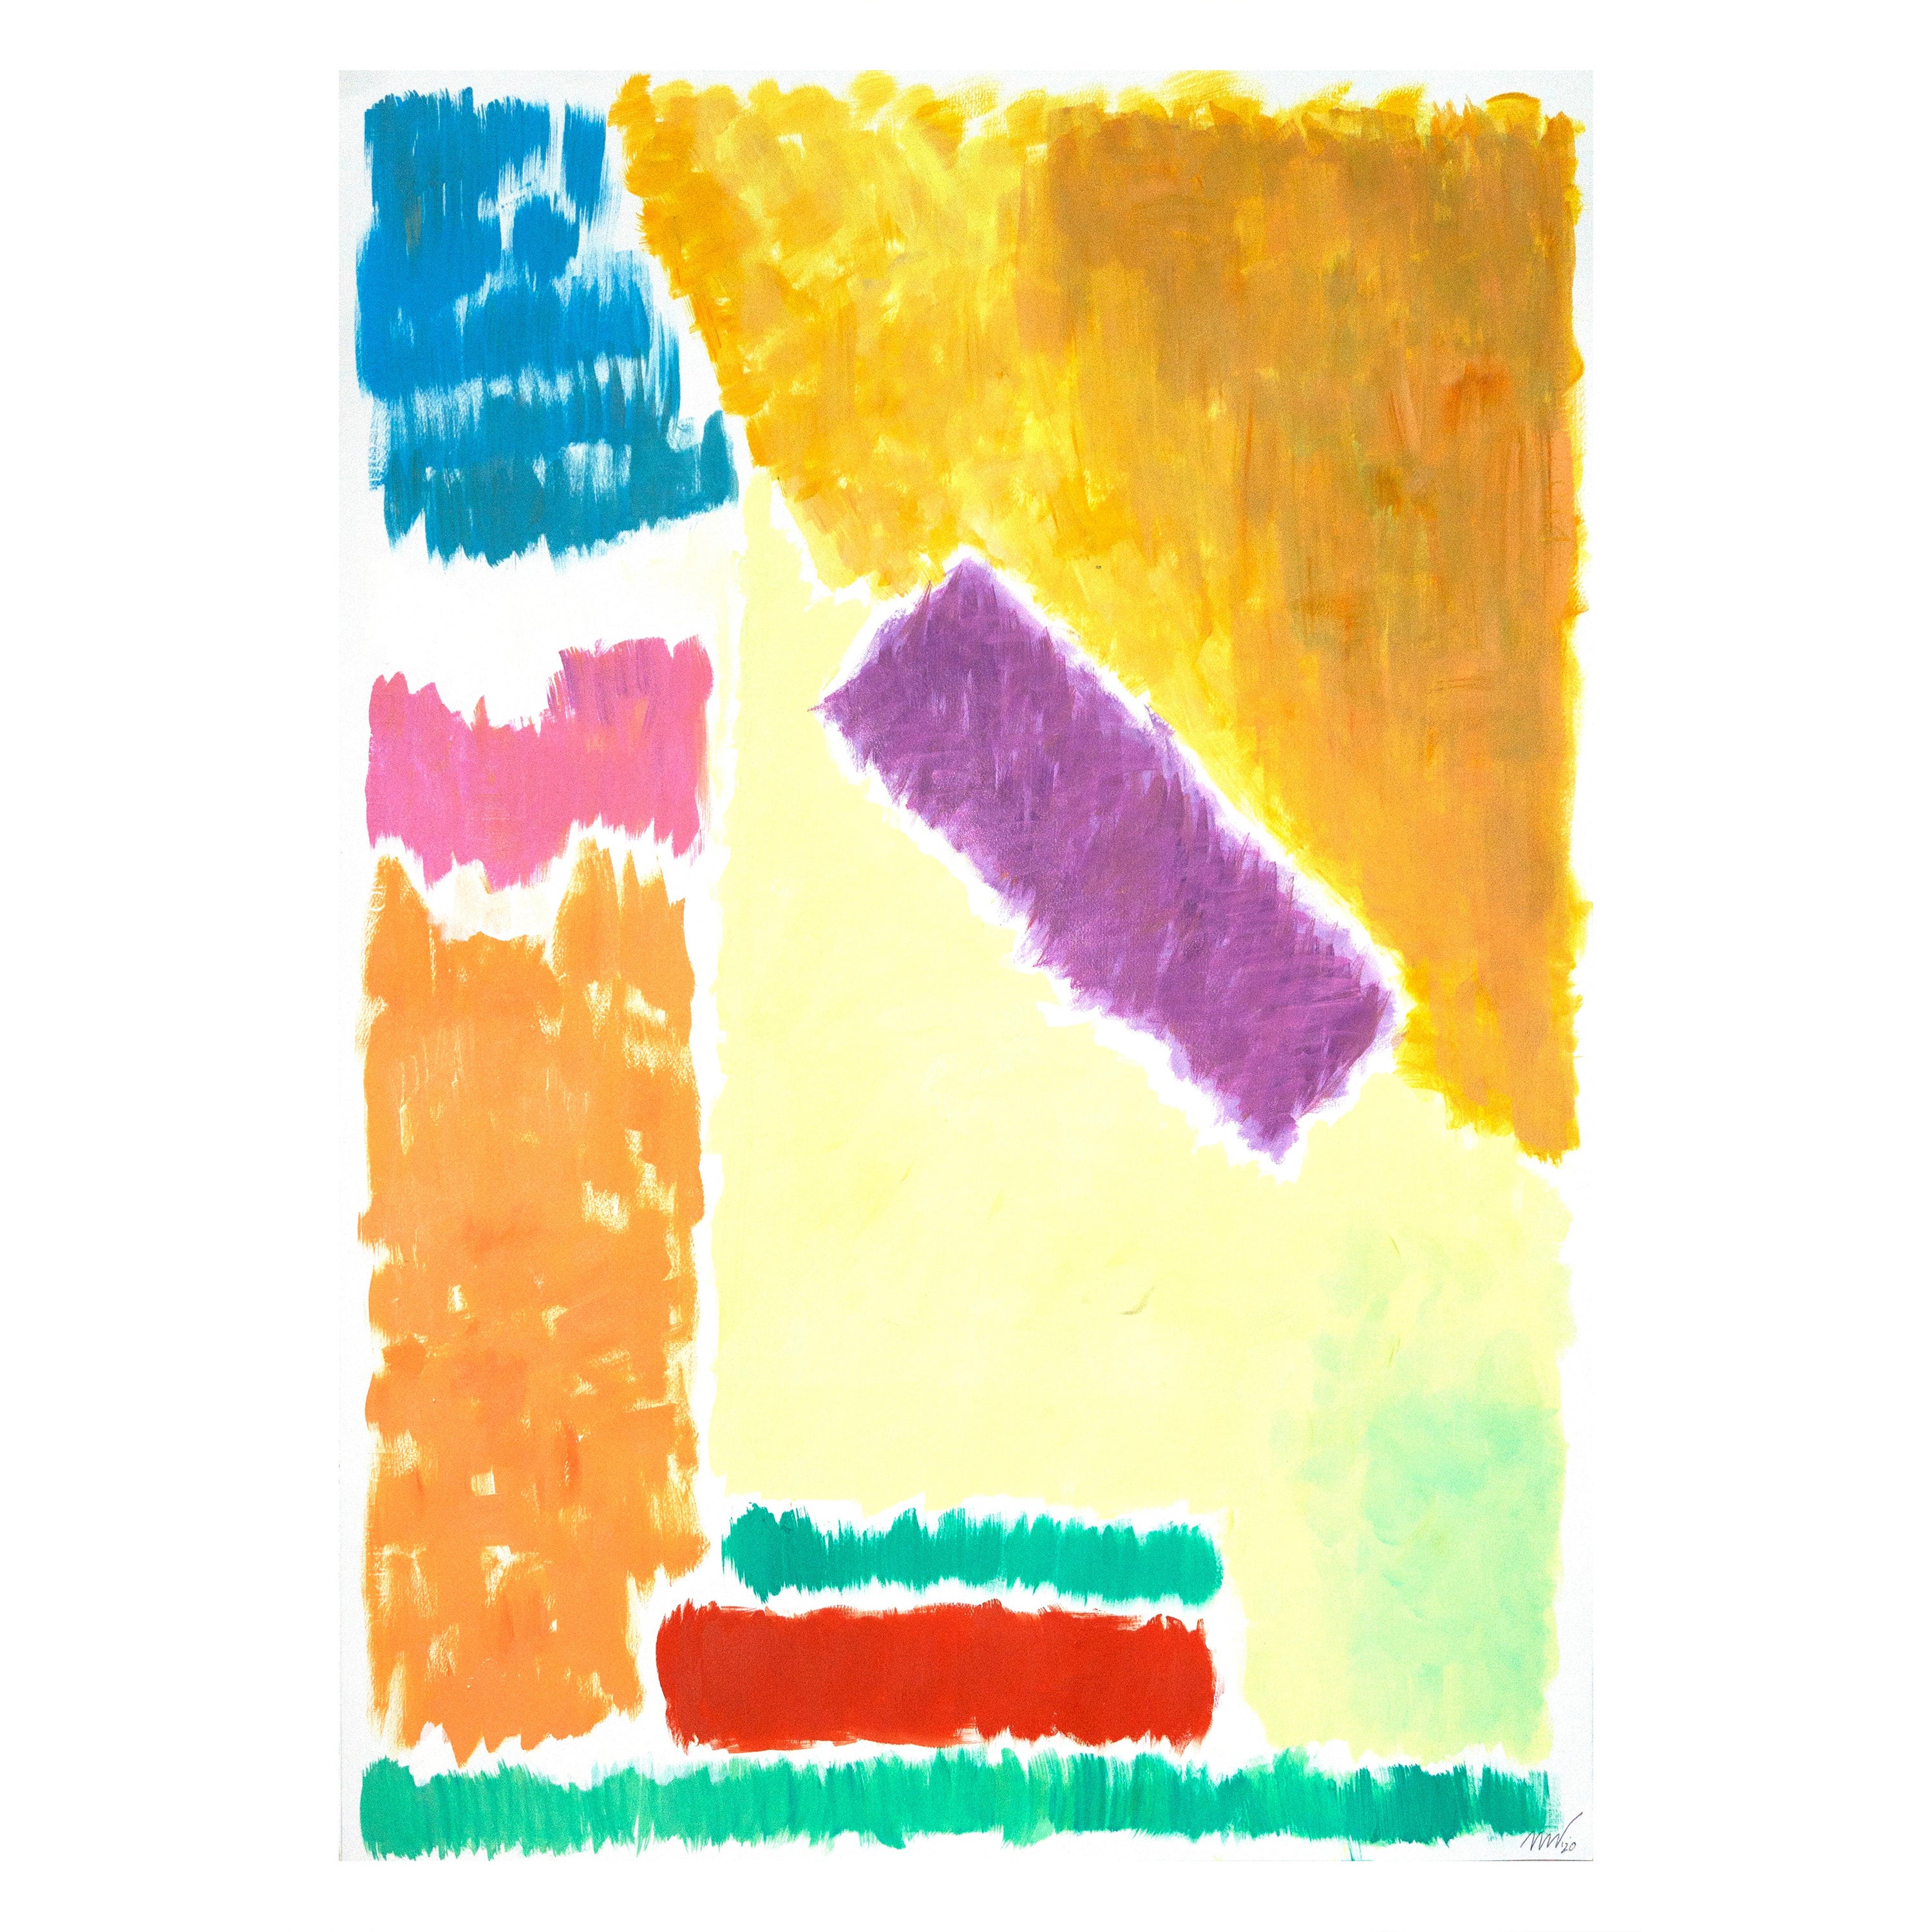 Paysage géométrique au pastel, peinture contemporaine sur papier, inspiration des années 70